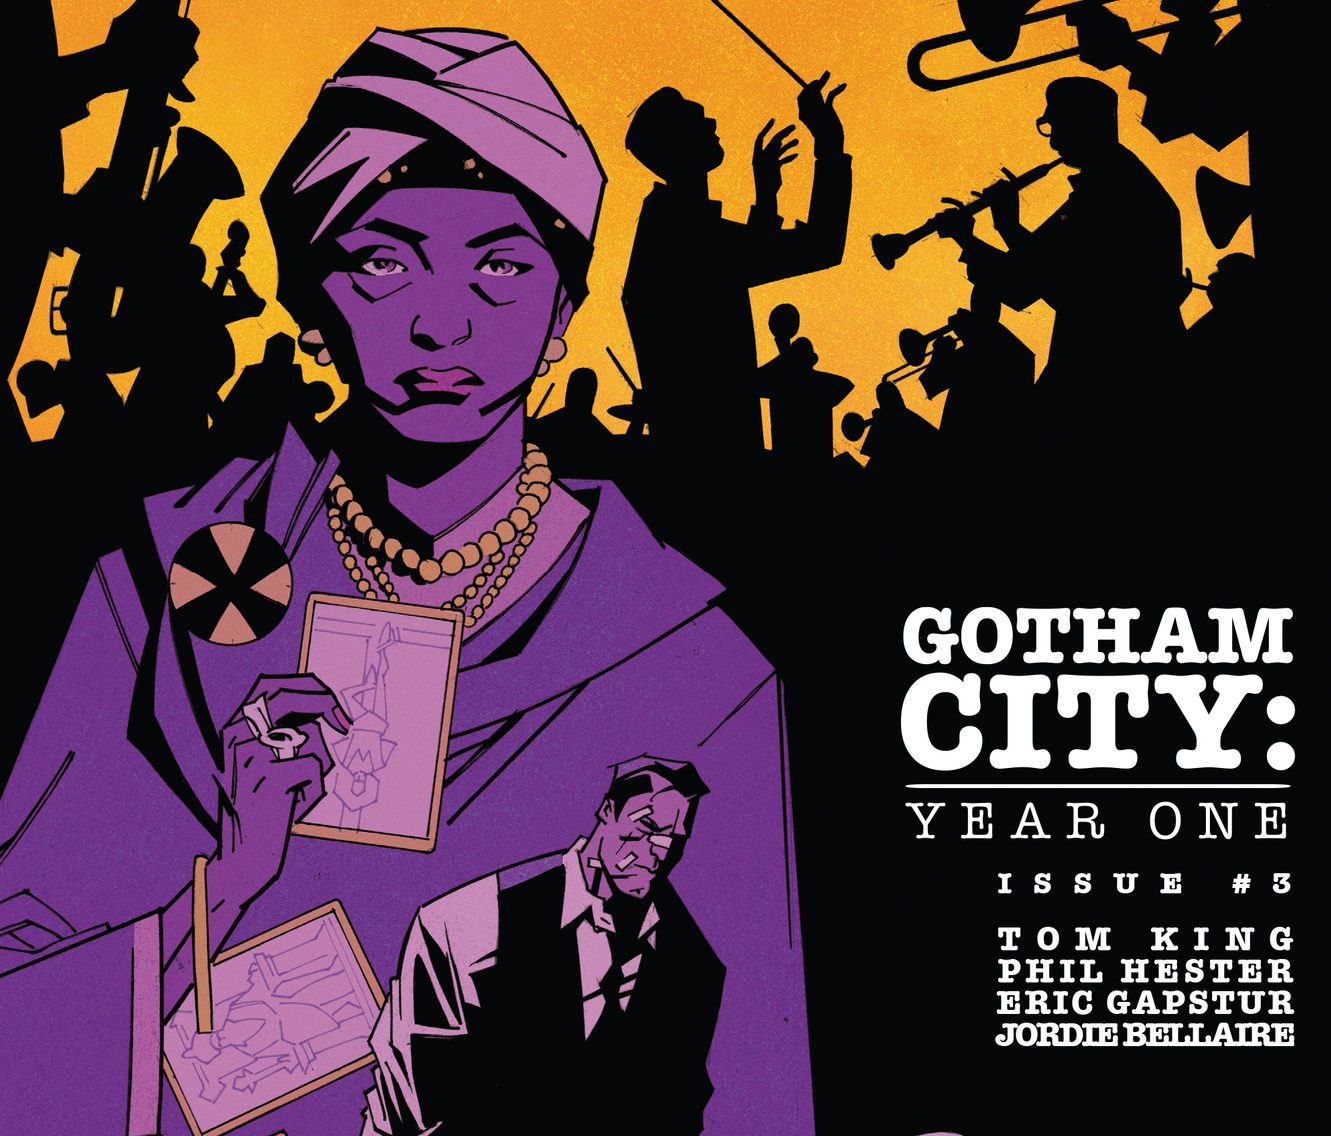 Gotham City: Year One #3